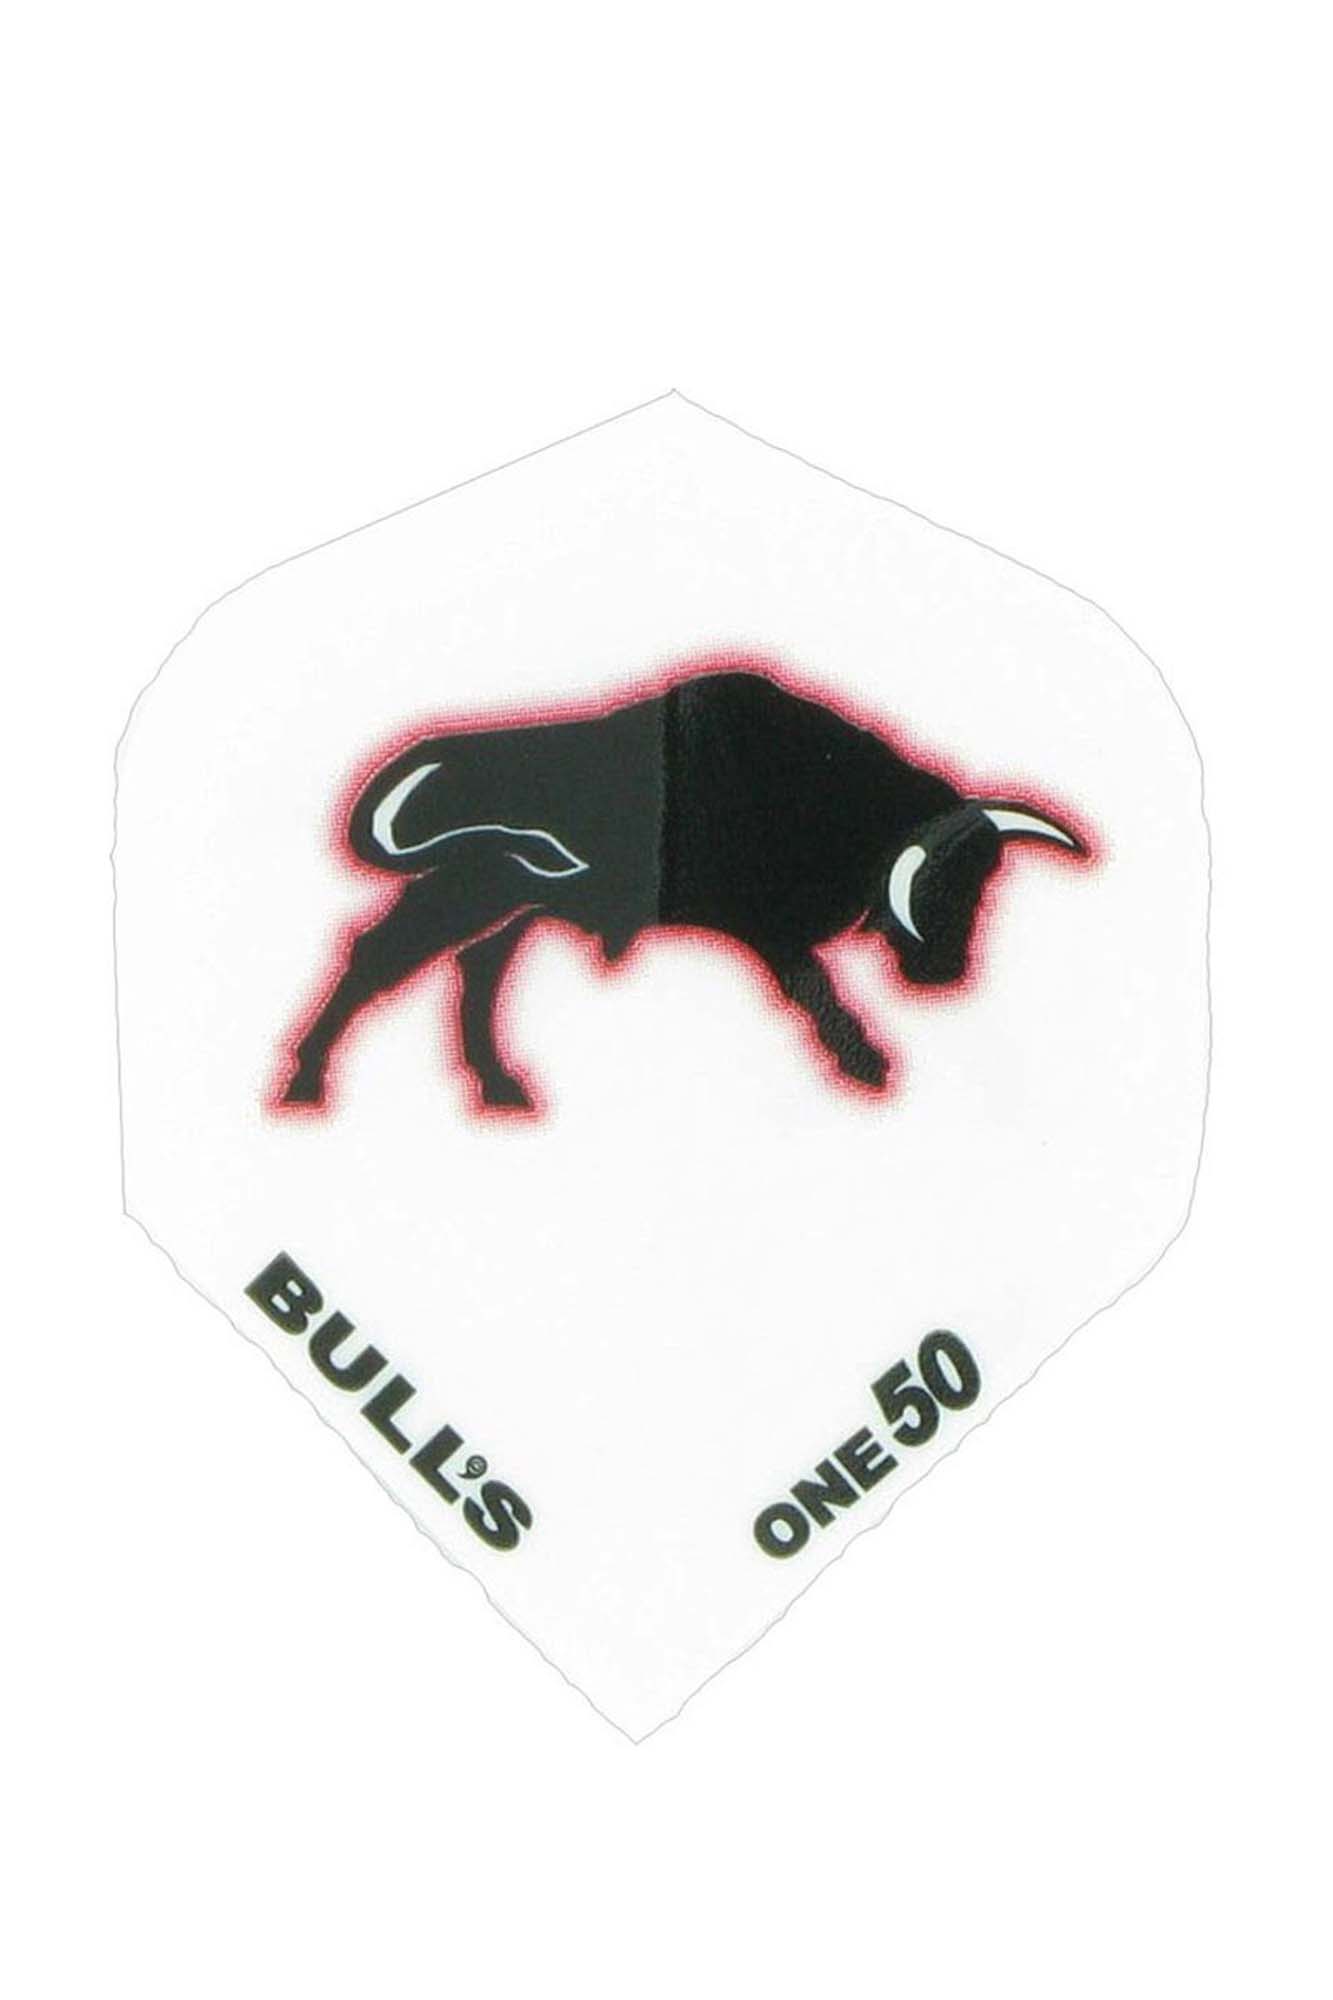 BULLS Pone50 Flight Bull